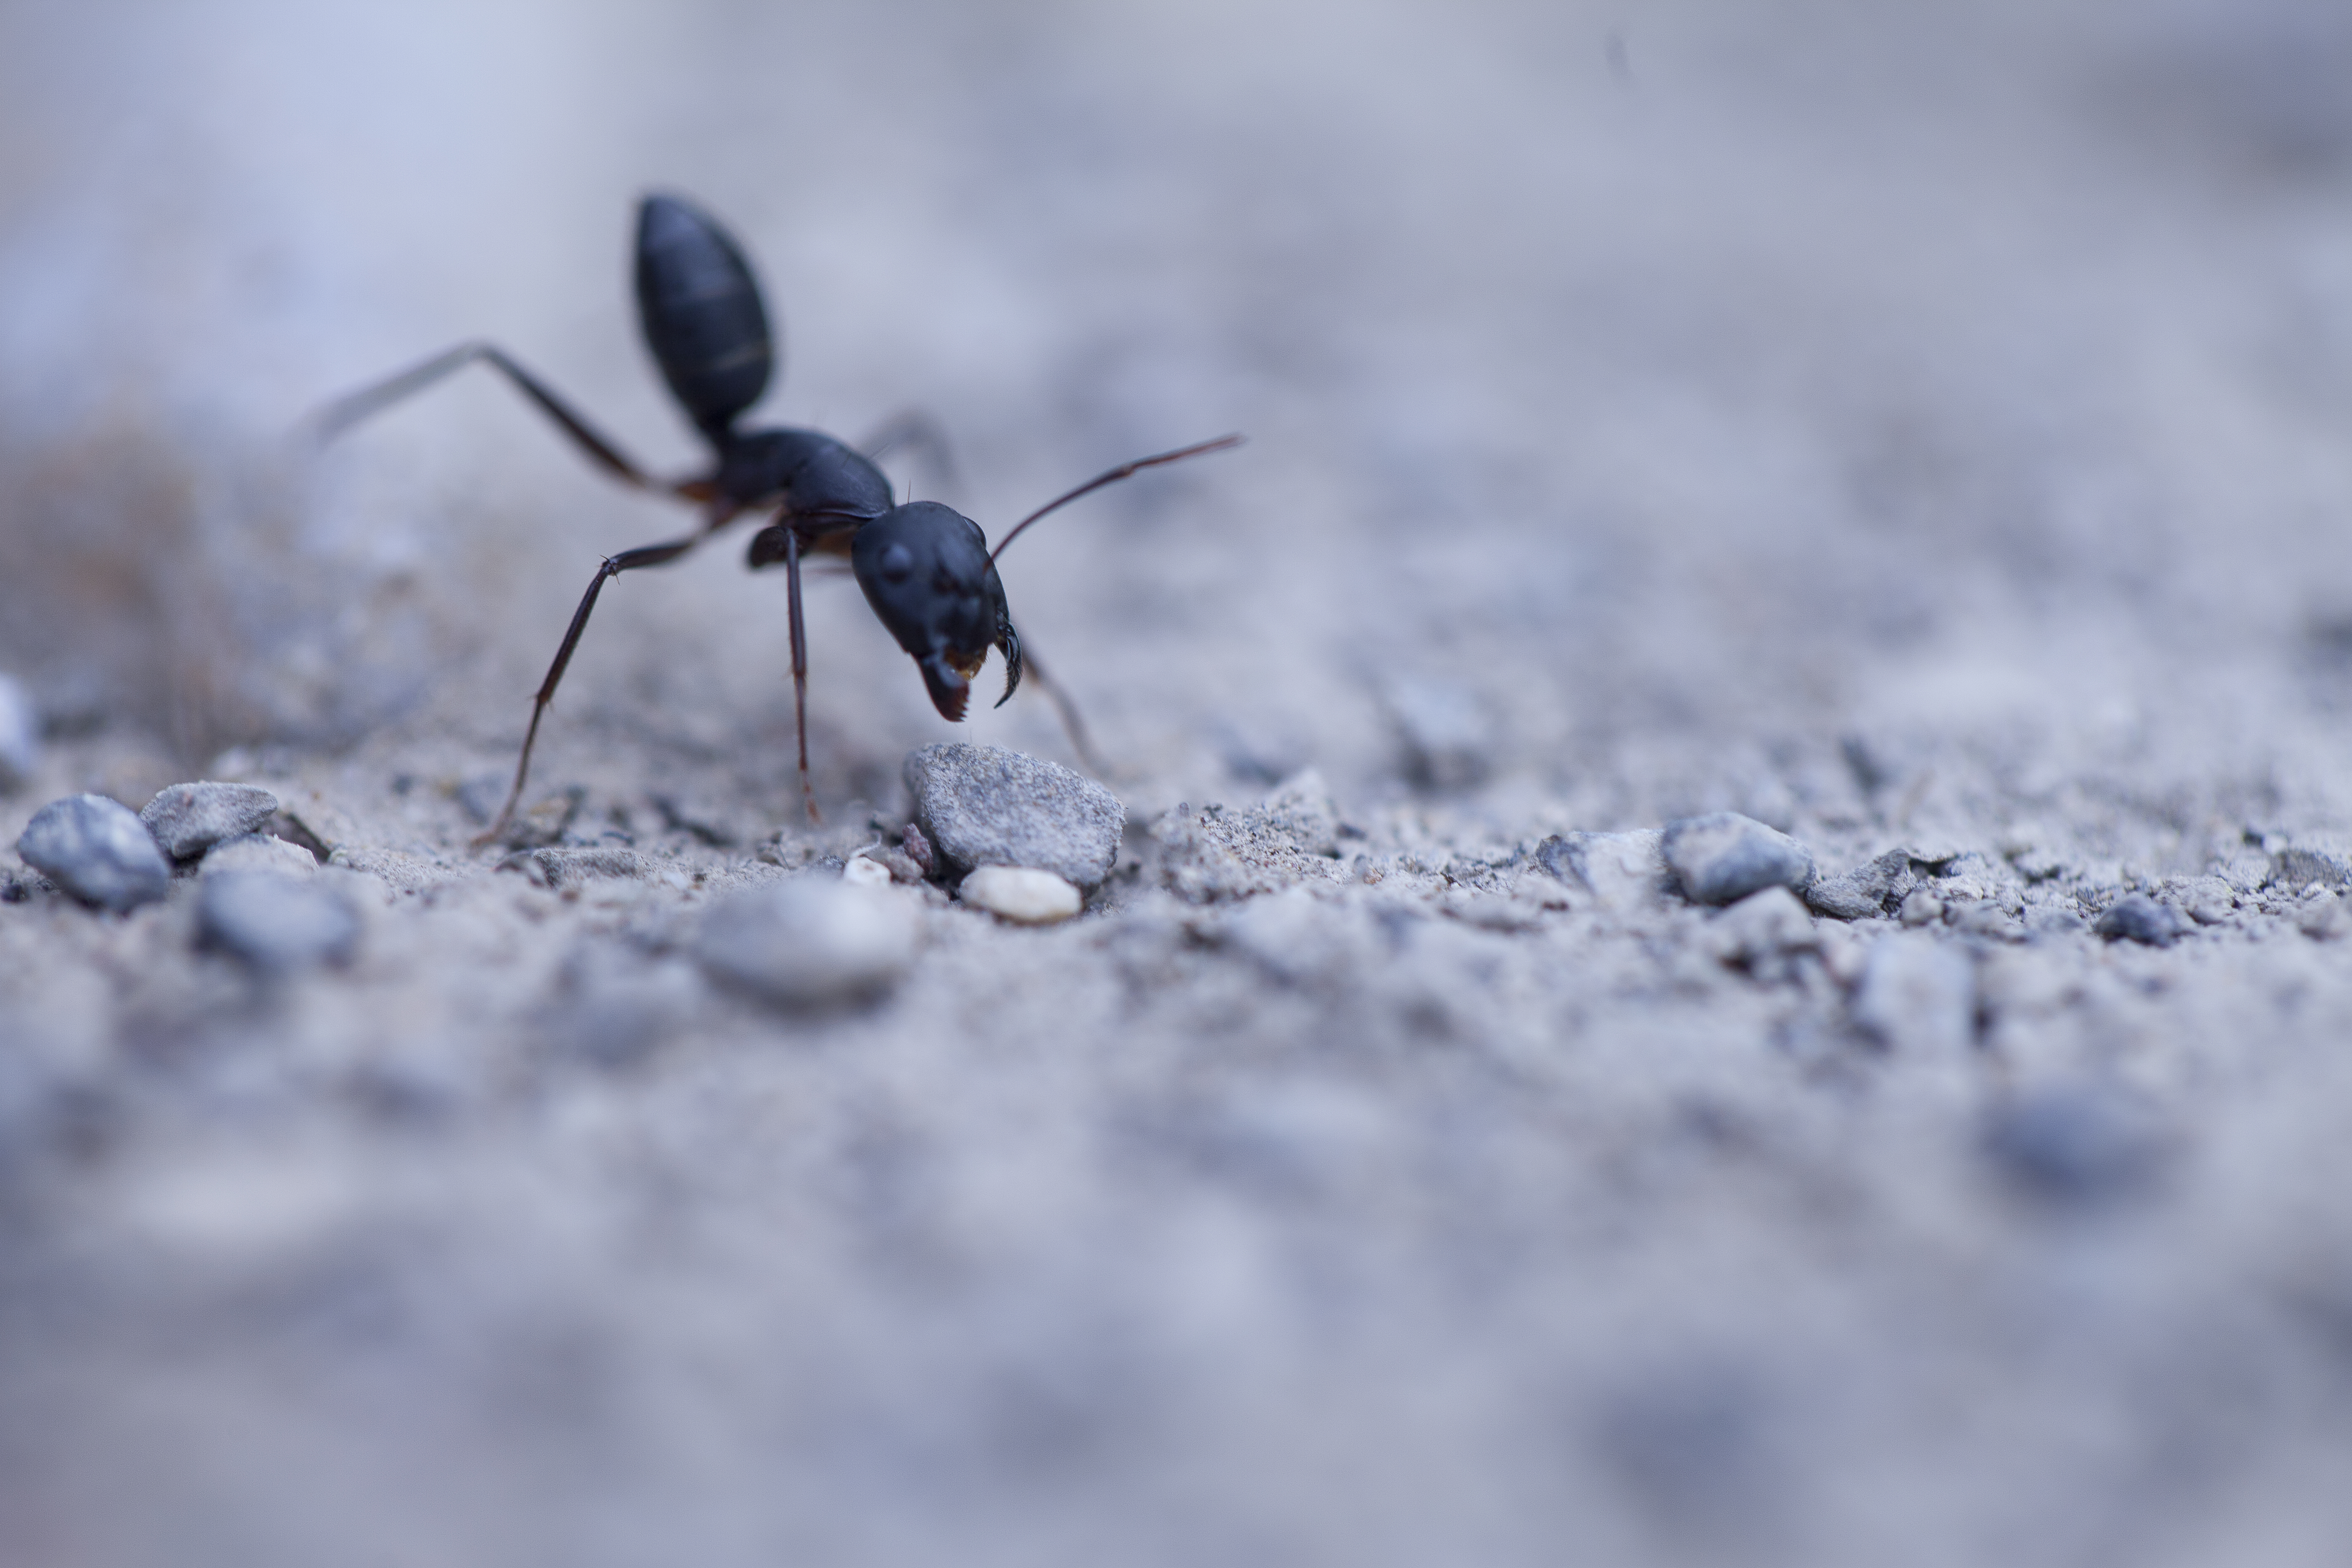 Agressive ant photo